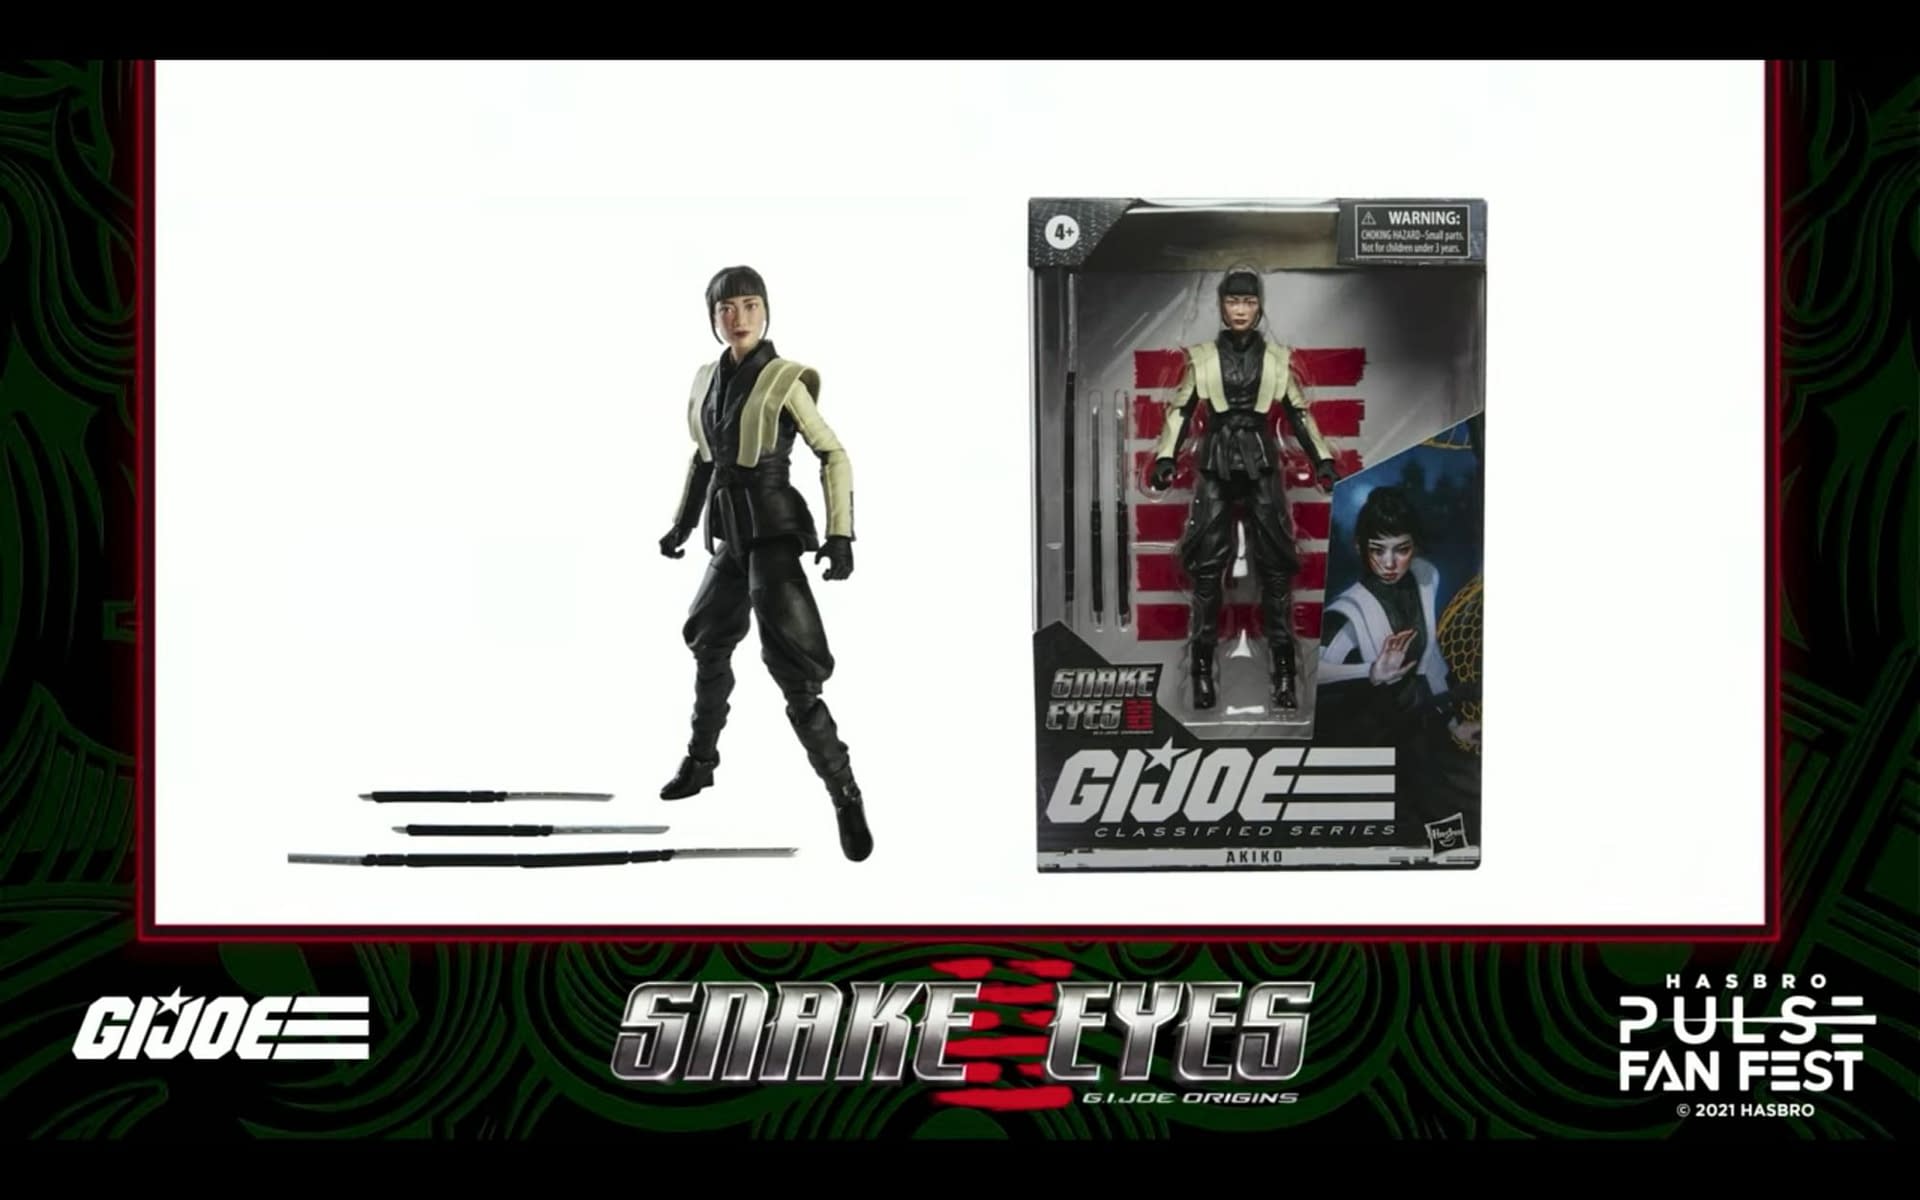 GI Joe Classified & Snake Eyes Reveals Take Over Hasbro Fan Fest